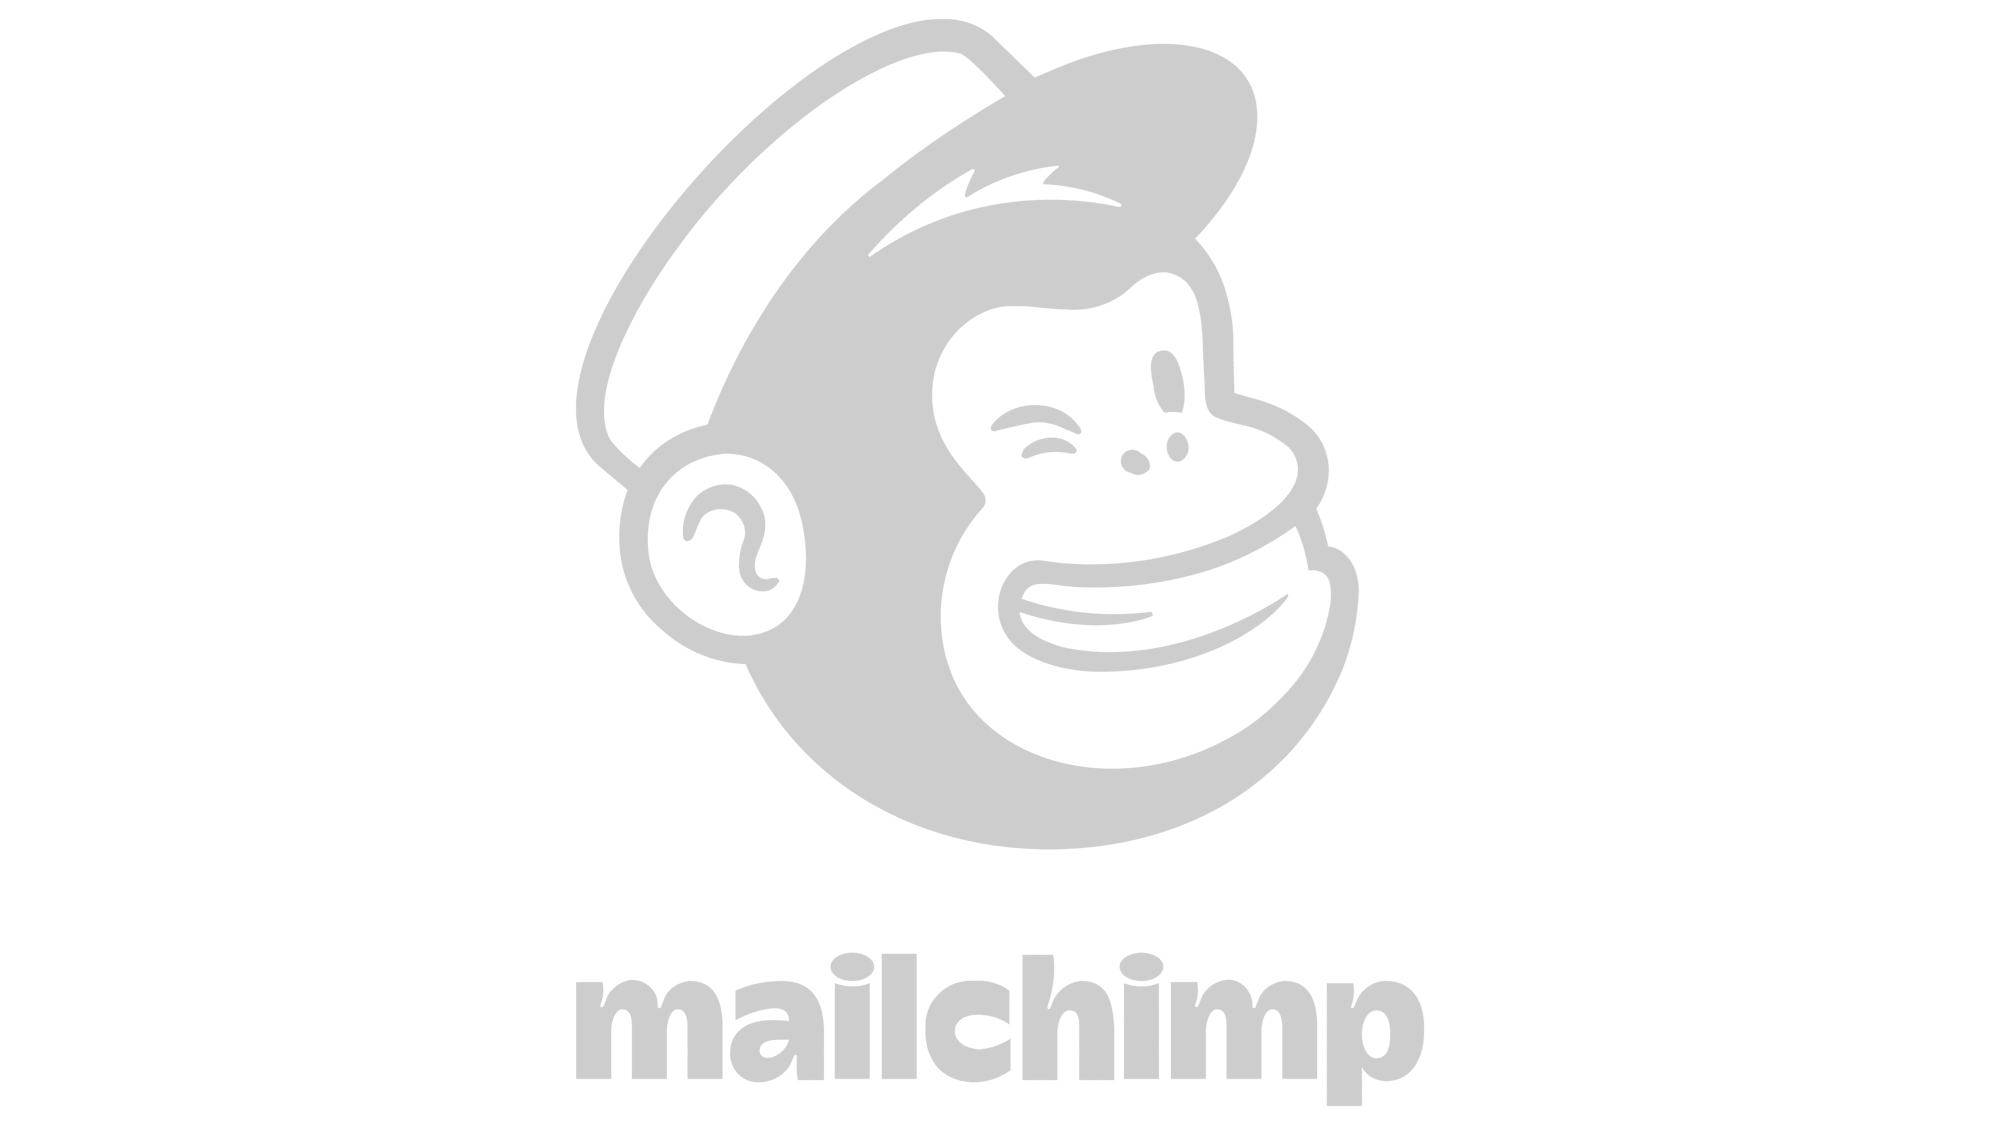 Mailchimp logo